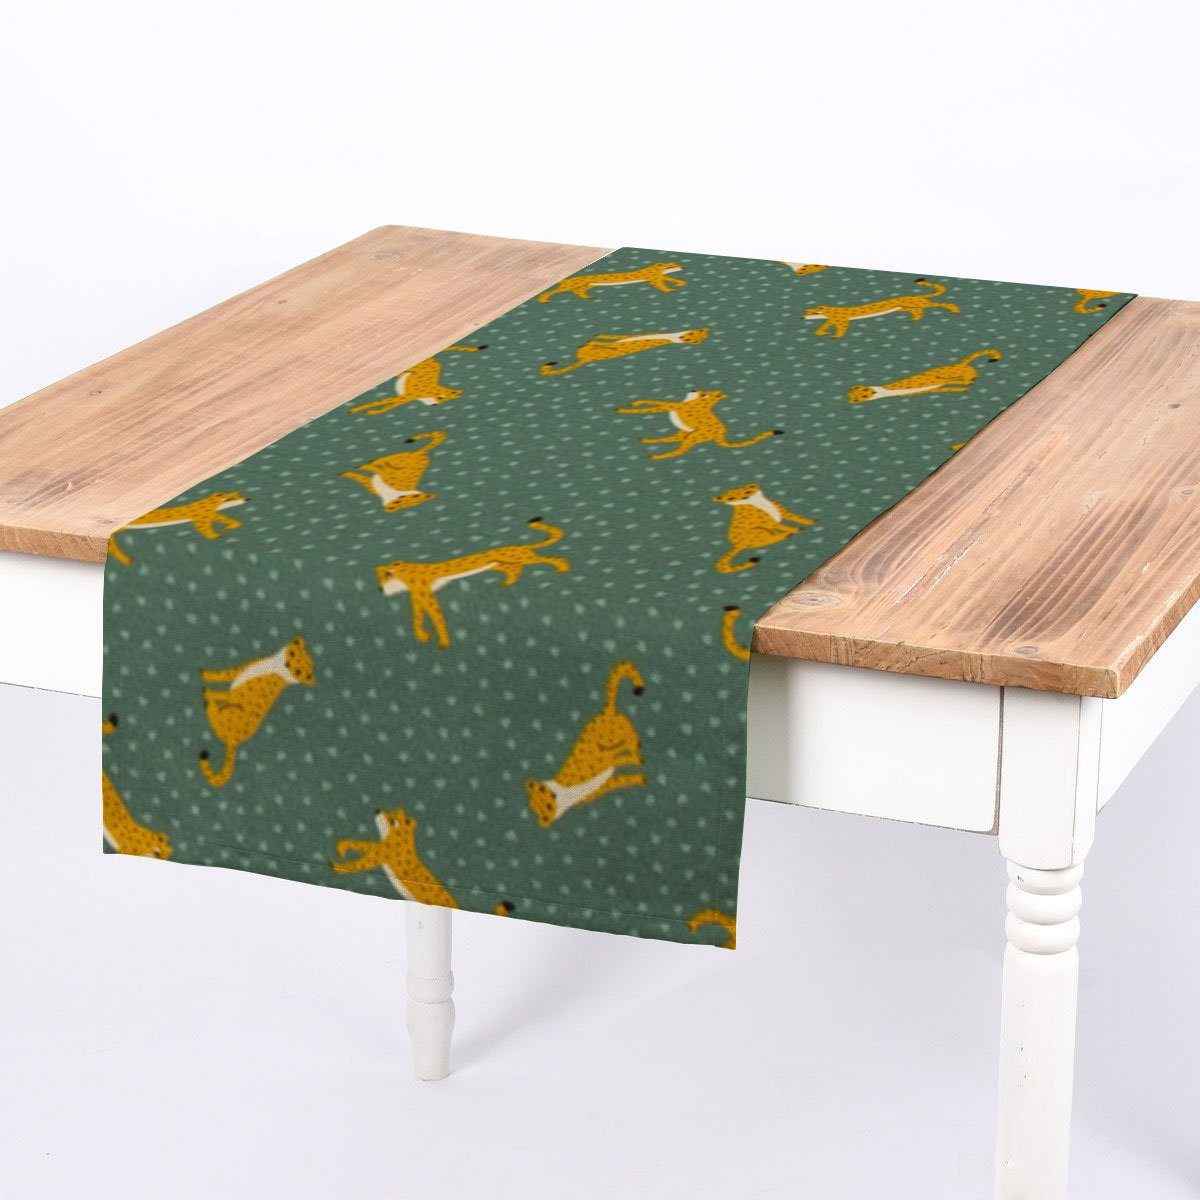 SCHÖNER LEBEN. Tischläufer SCHÖNER LEBEN. Tischläufer man Leopard Punkte grün gelb 40x160cm, handmade